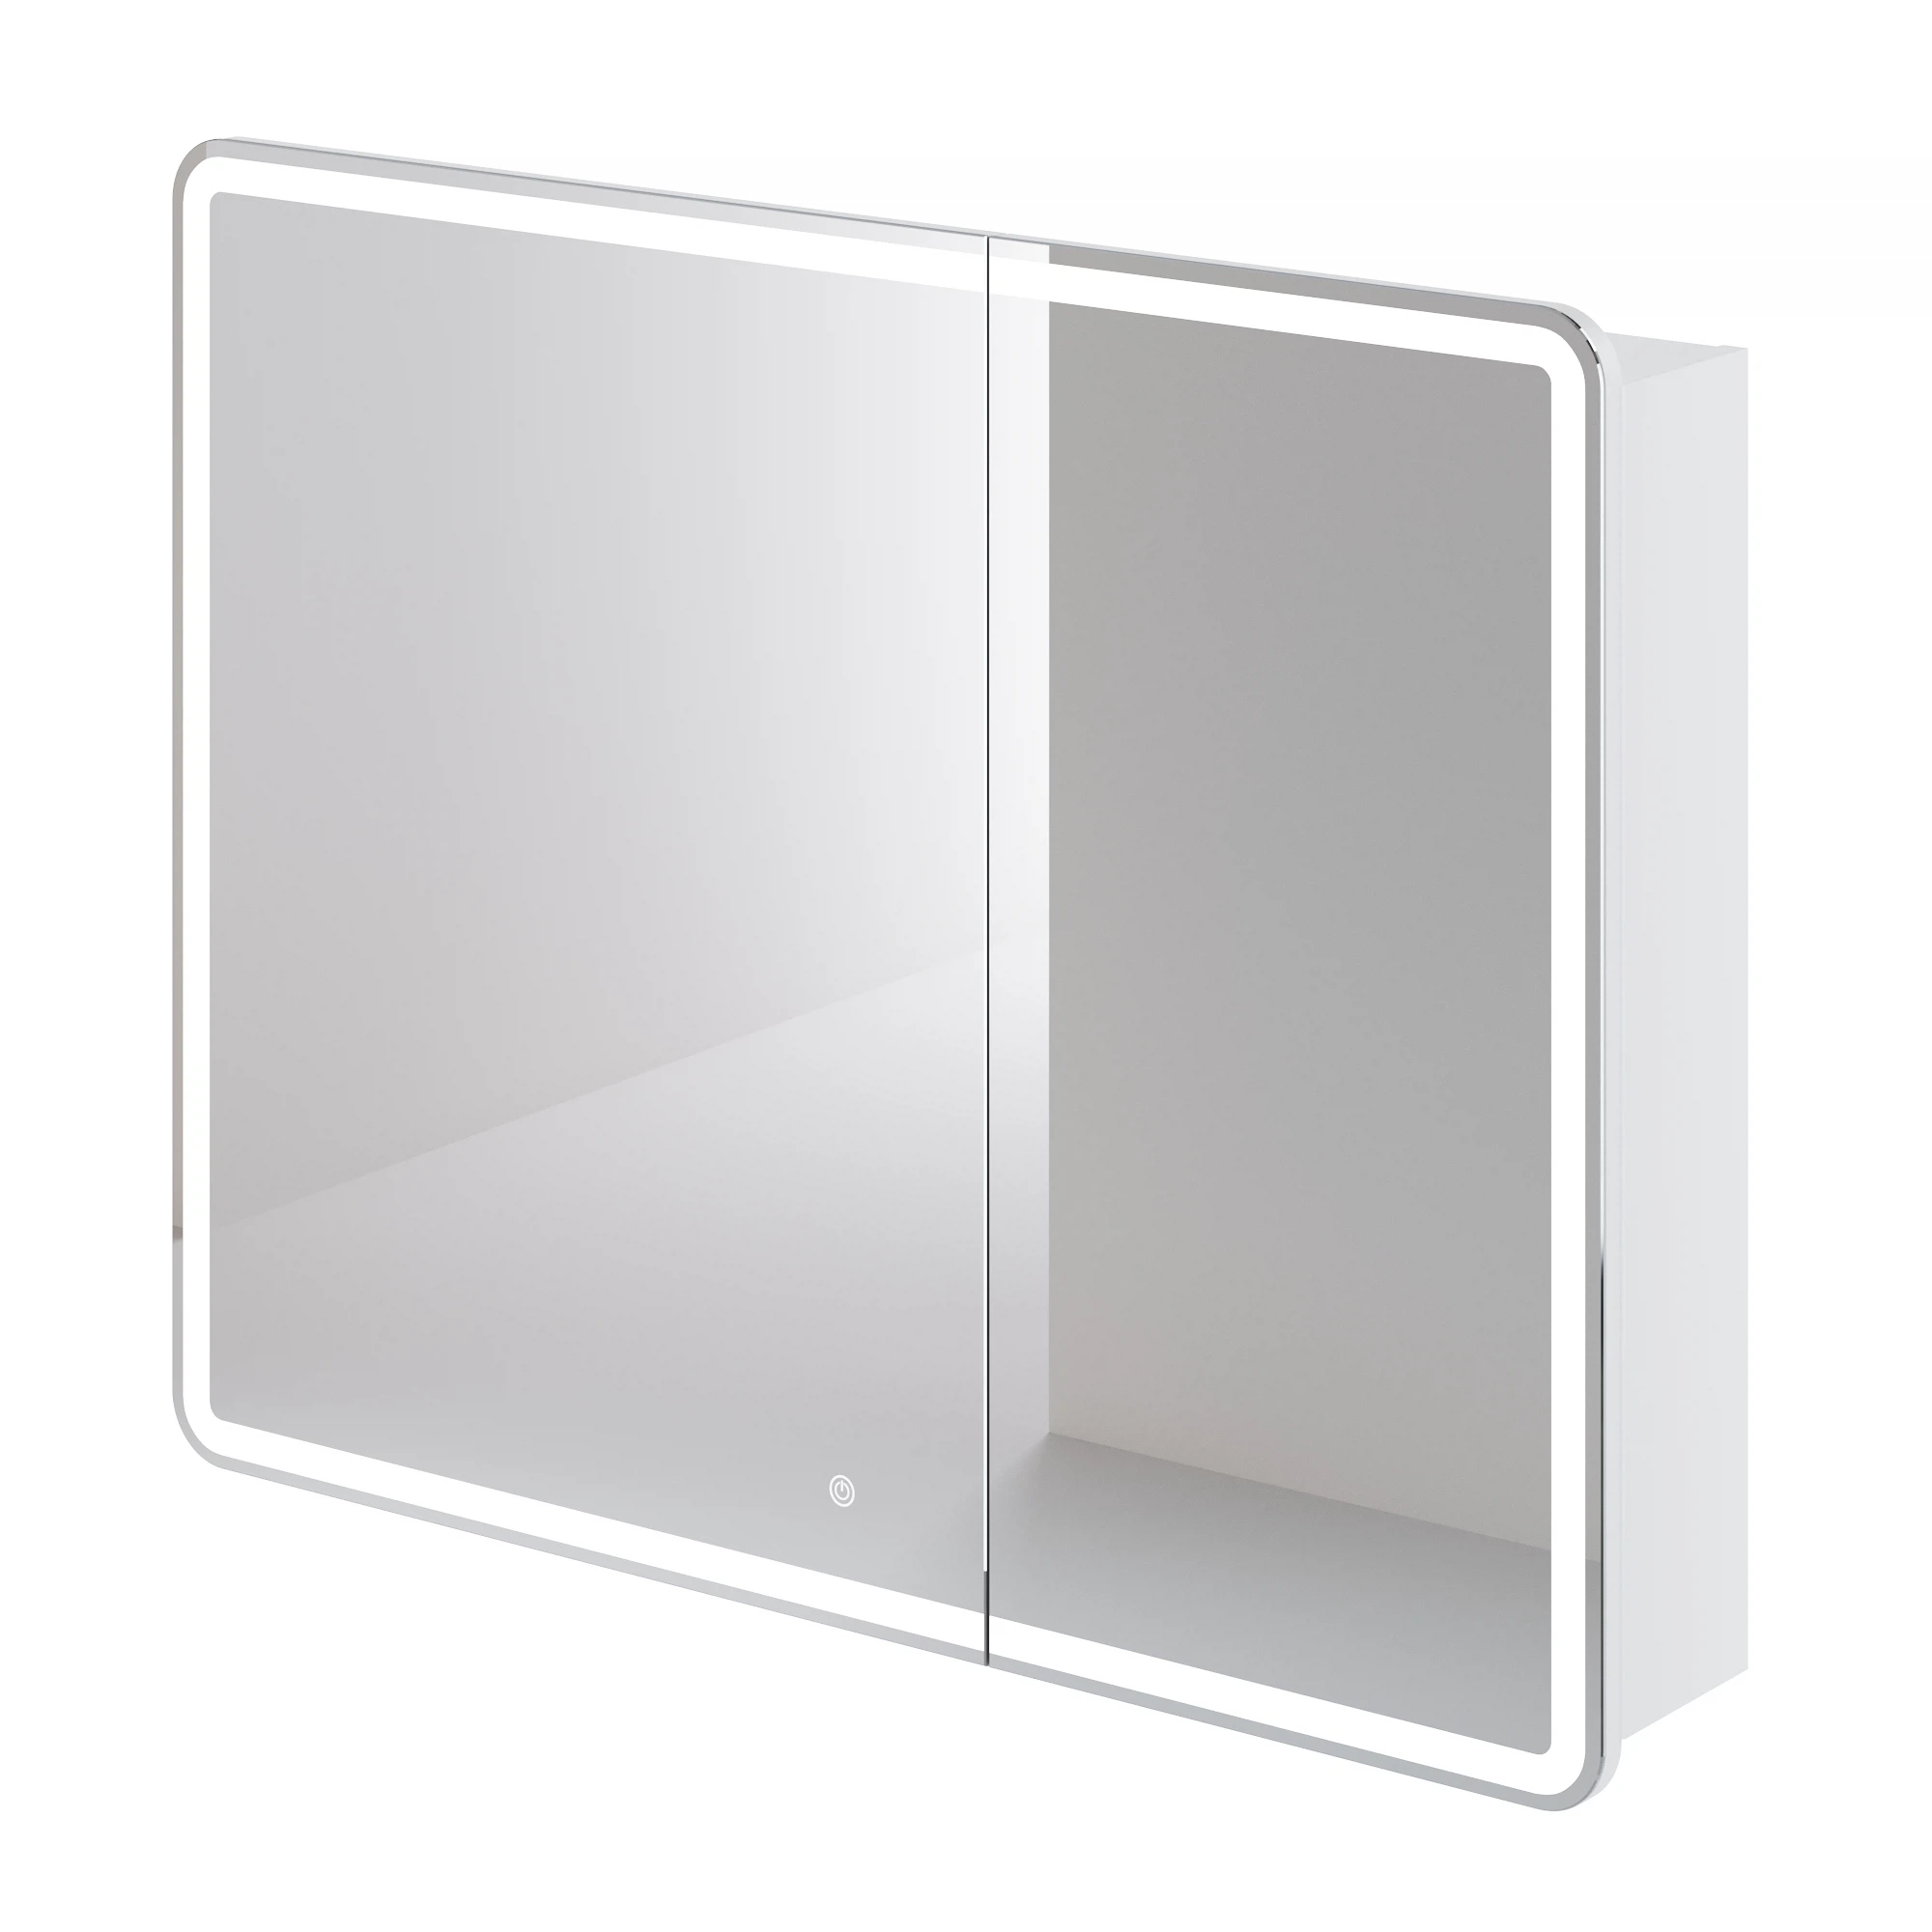 Зеркальный шкаф Итана Miro 4657792953319 1000*790 мм (белый) с подсветкой